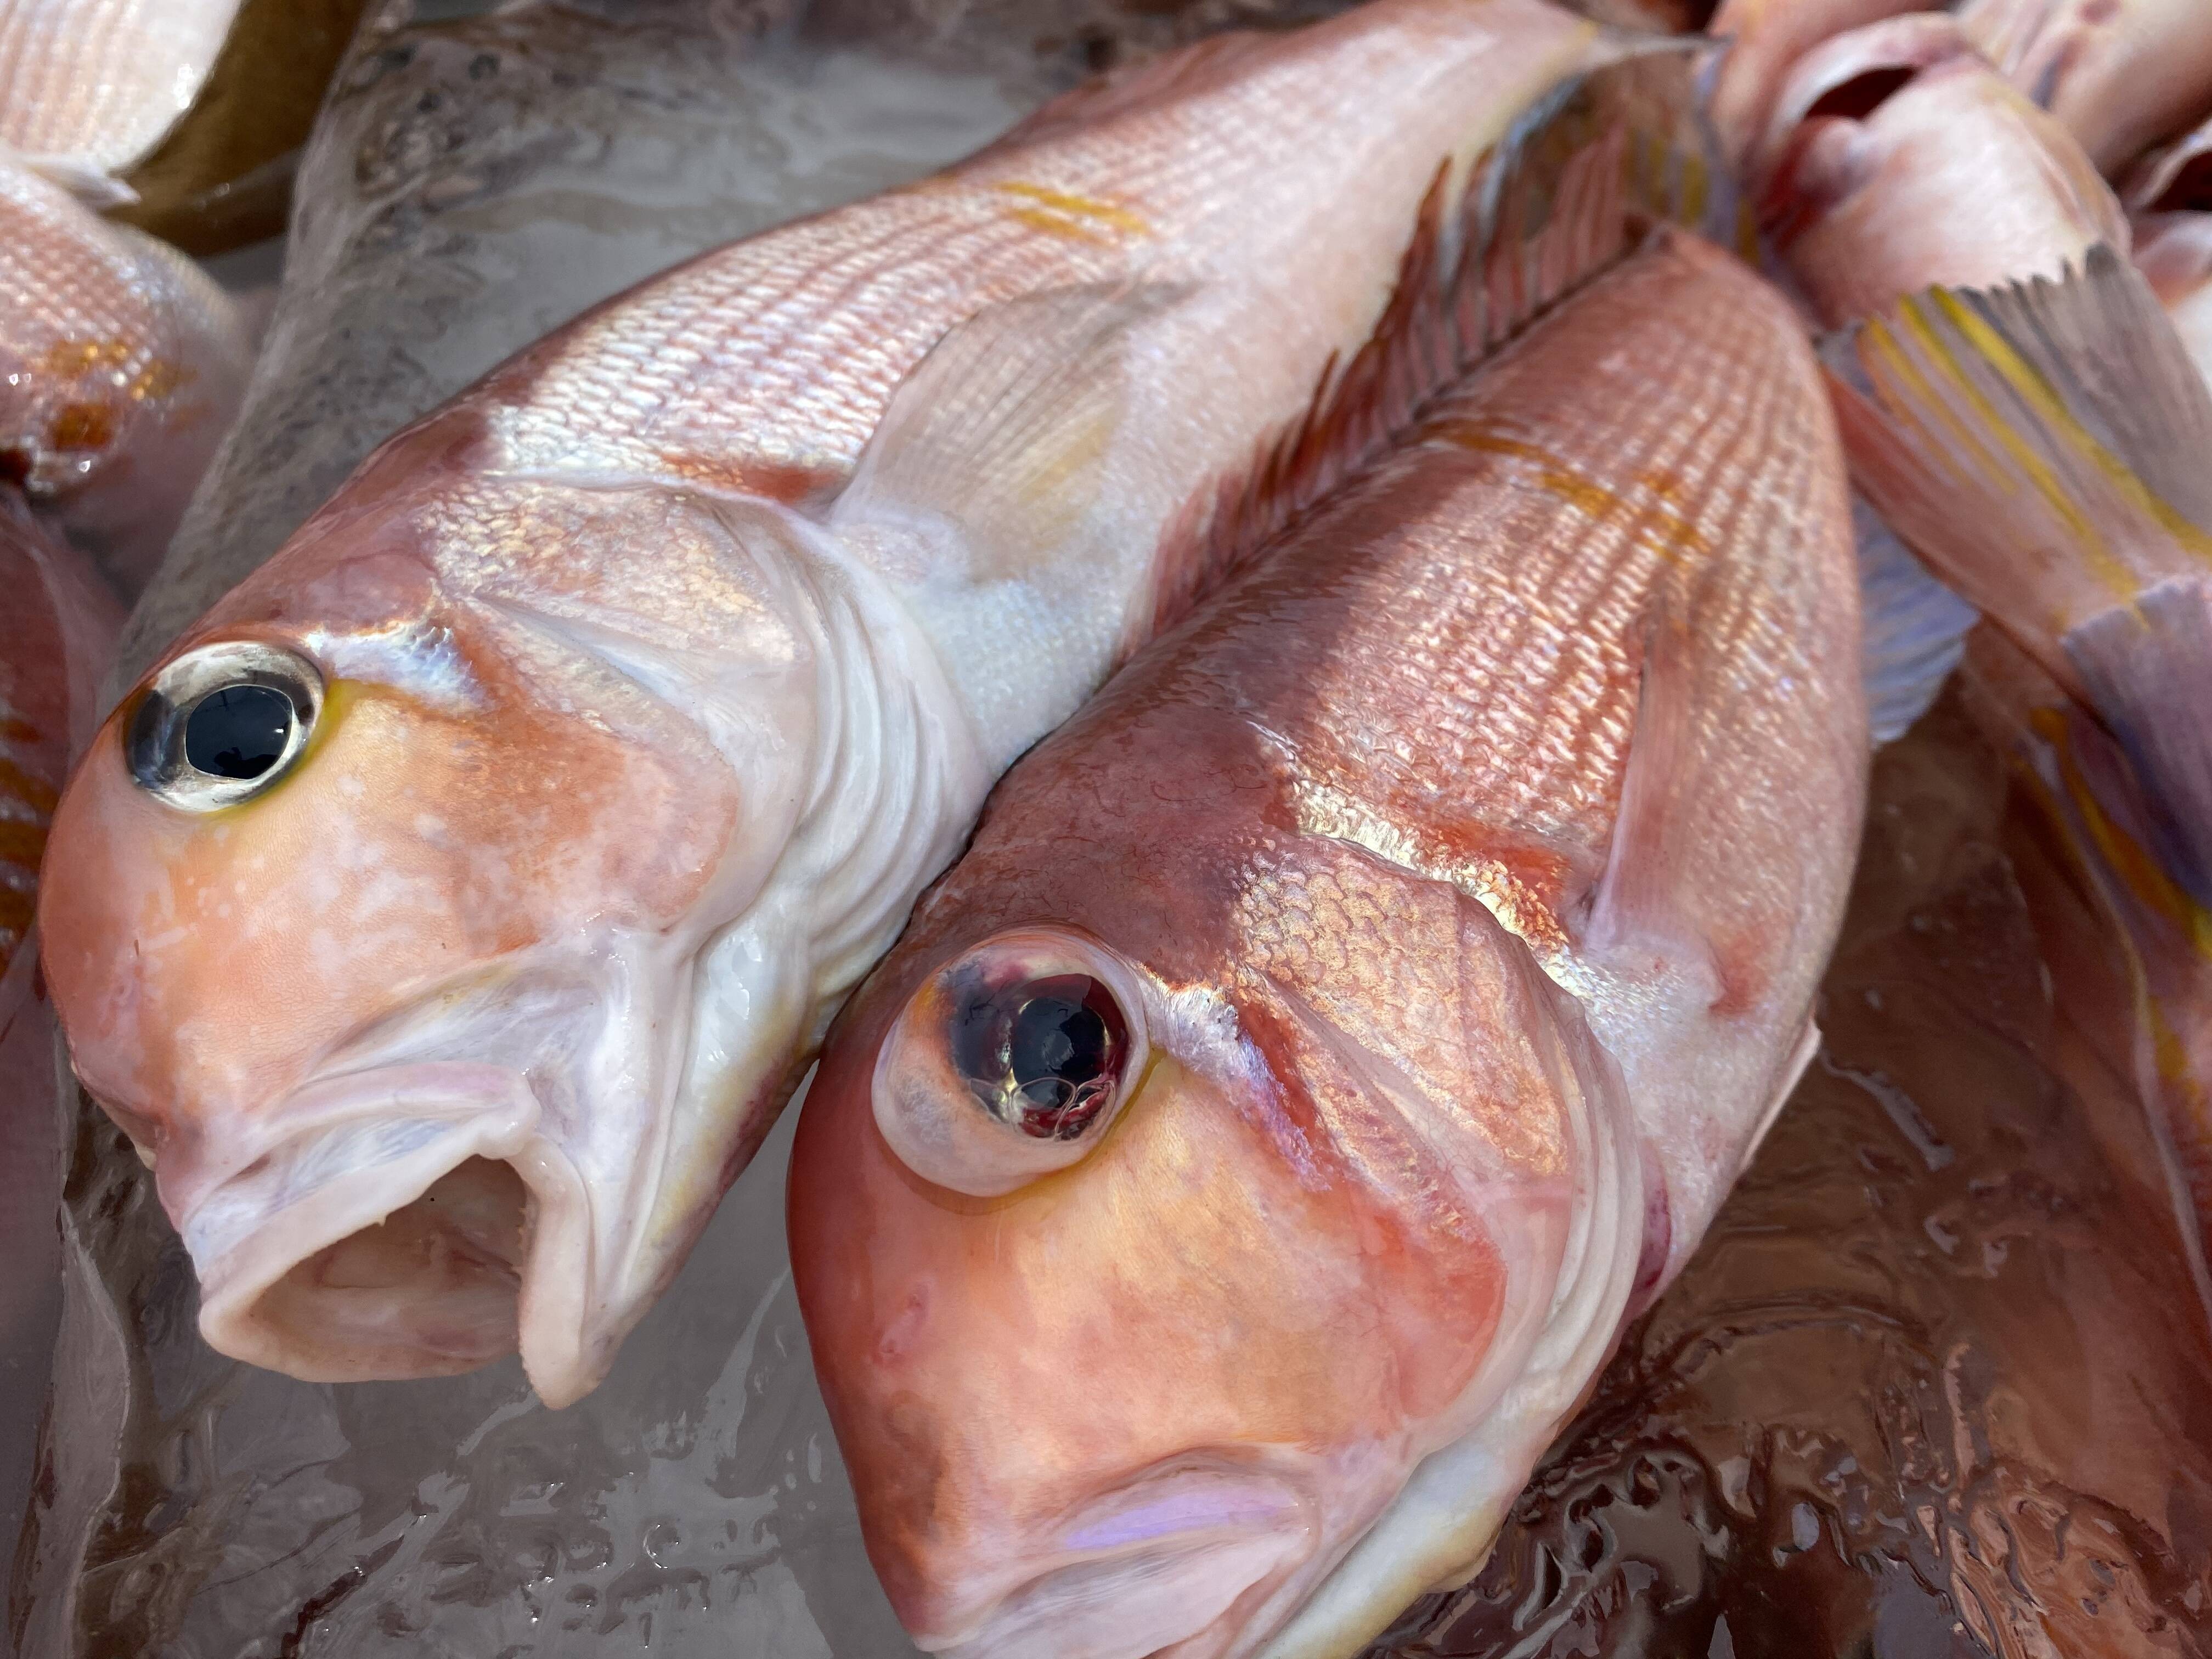 漁師直送 秋田沖で荒波にもまれた天然甘鯛 1 5kg 4 5匹 秋田県産 食べチョク 農家 漁師の産直ネット通販 旬の食材を生産者直送